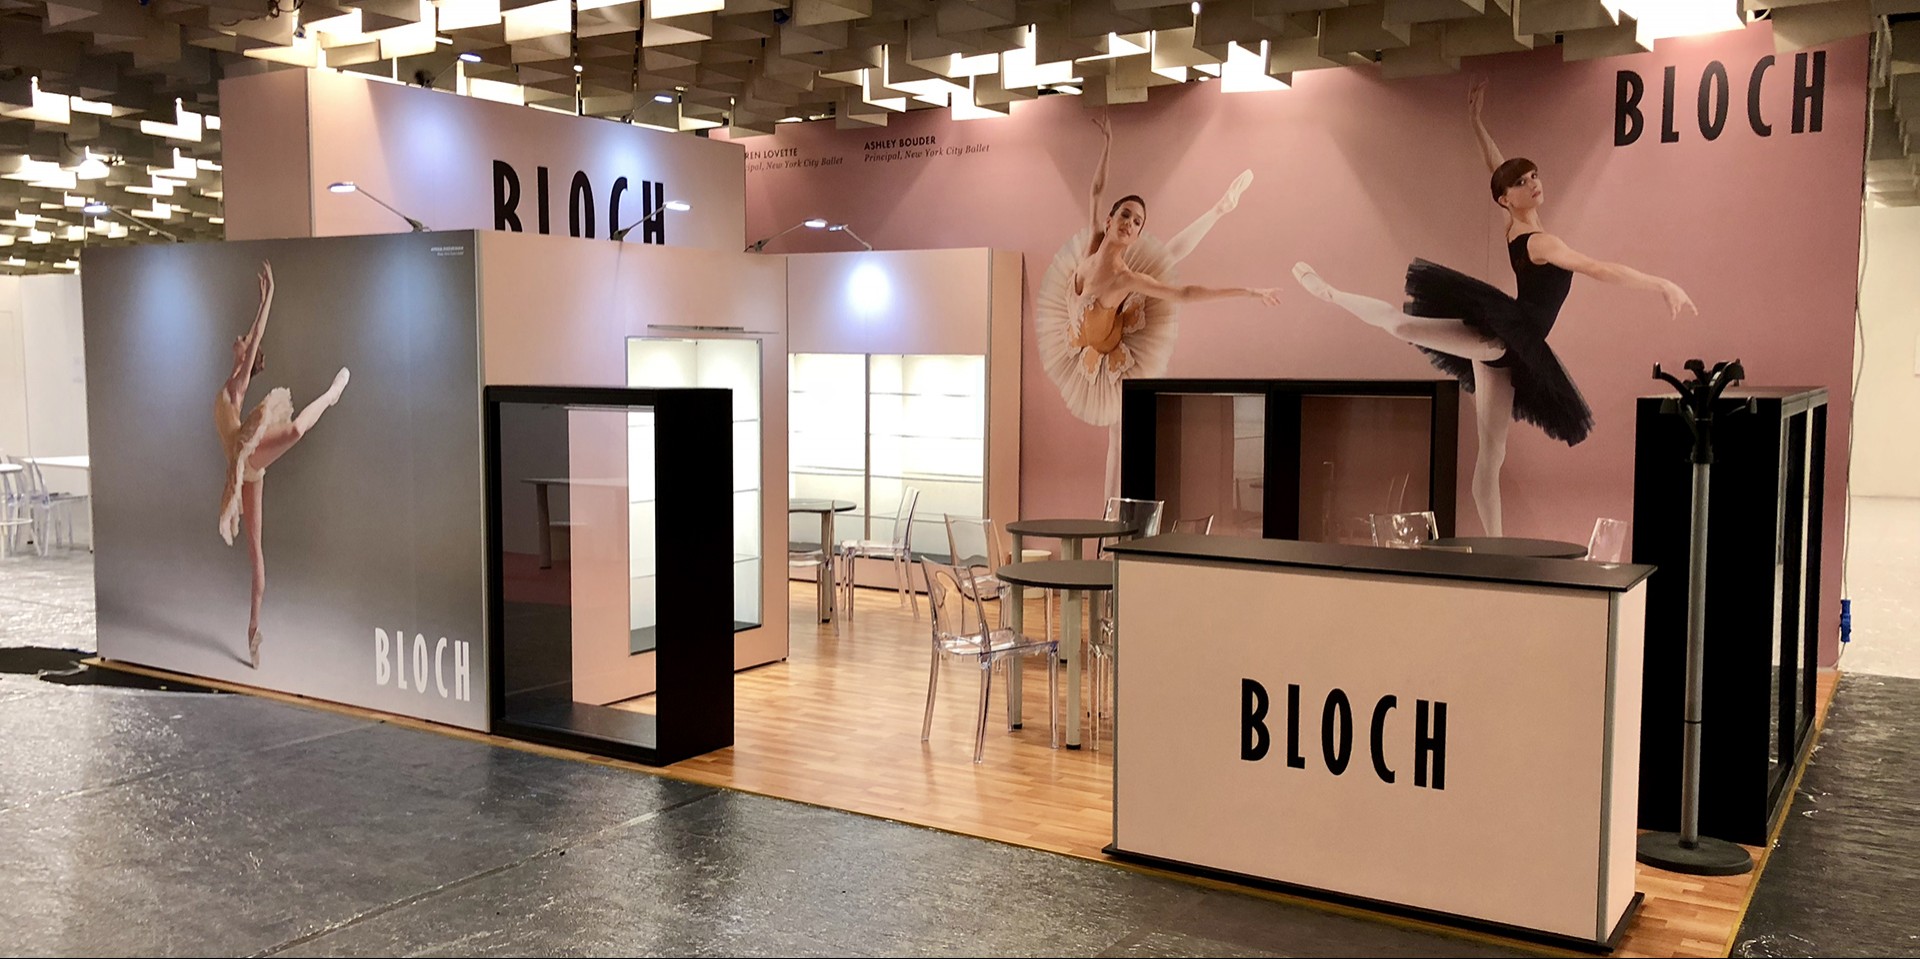 bloch versaform modular exhibition stand design - Guardian Display